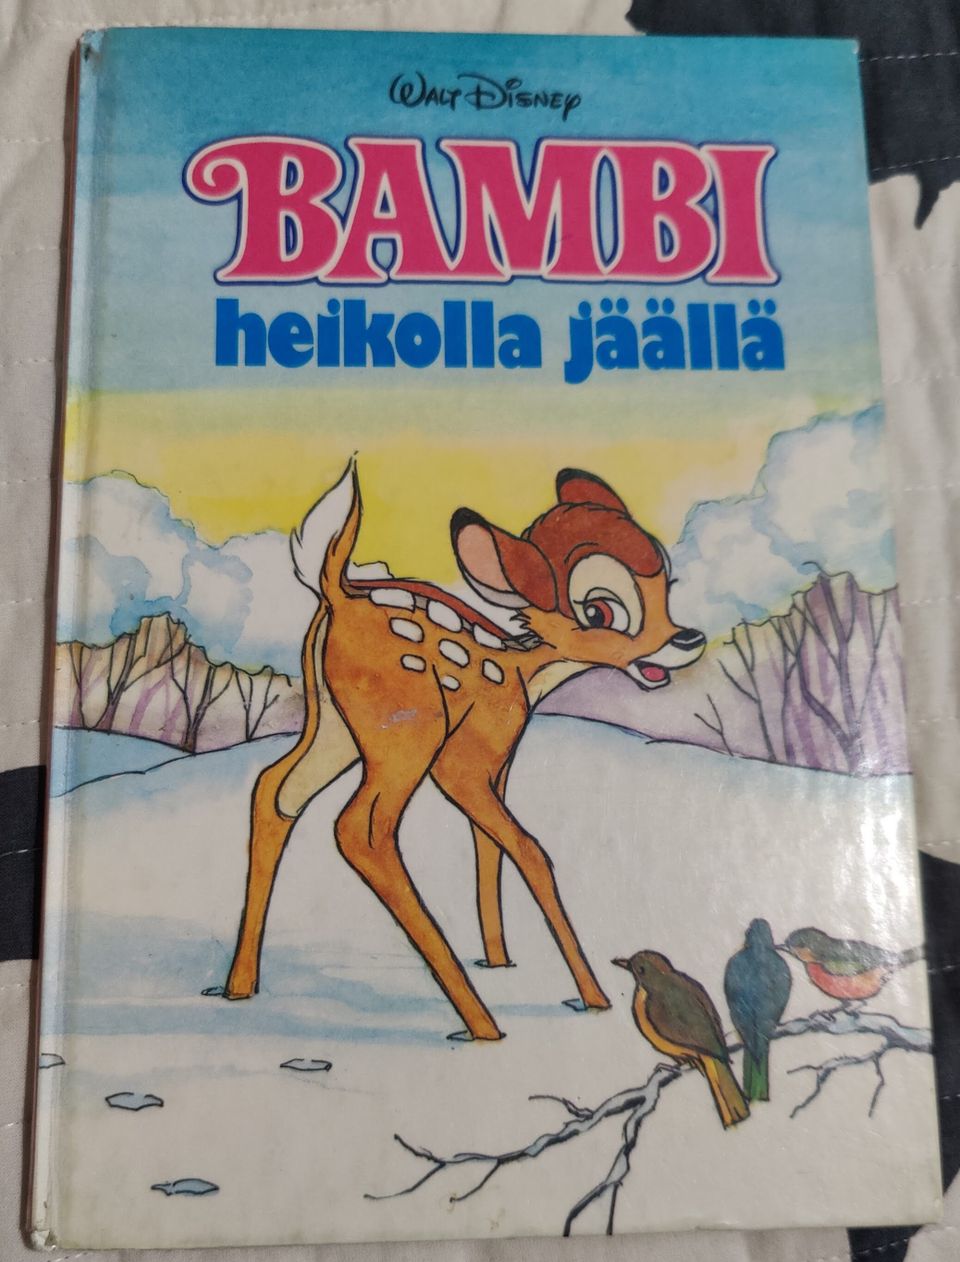 Bambi heikoilla jäillä